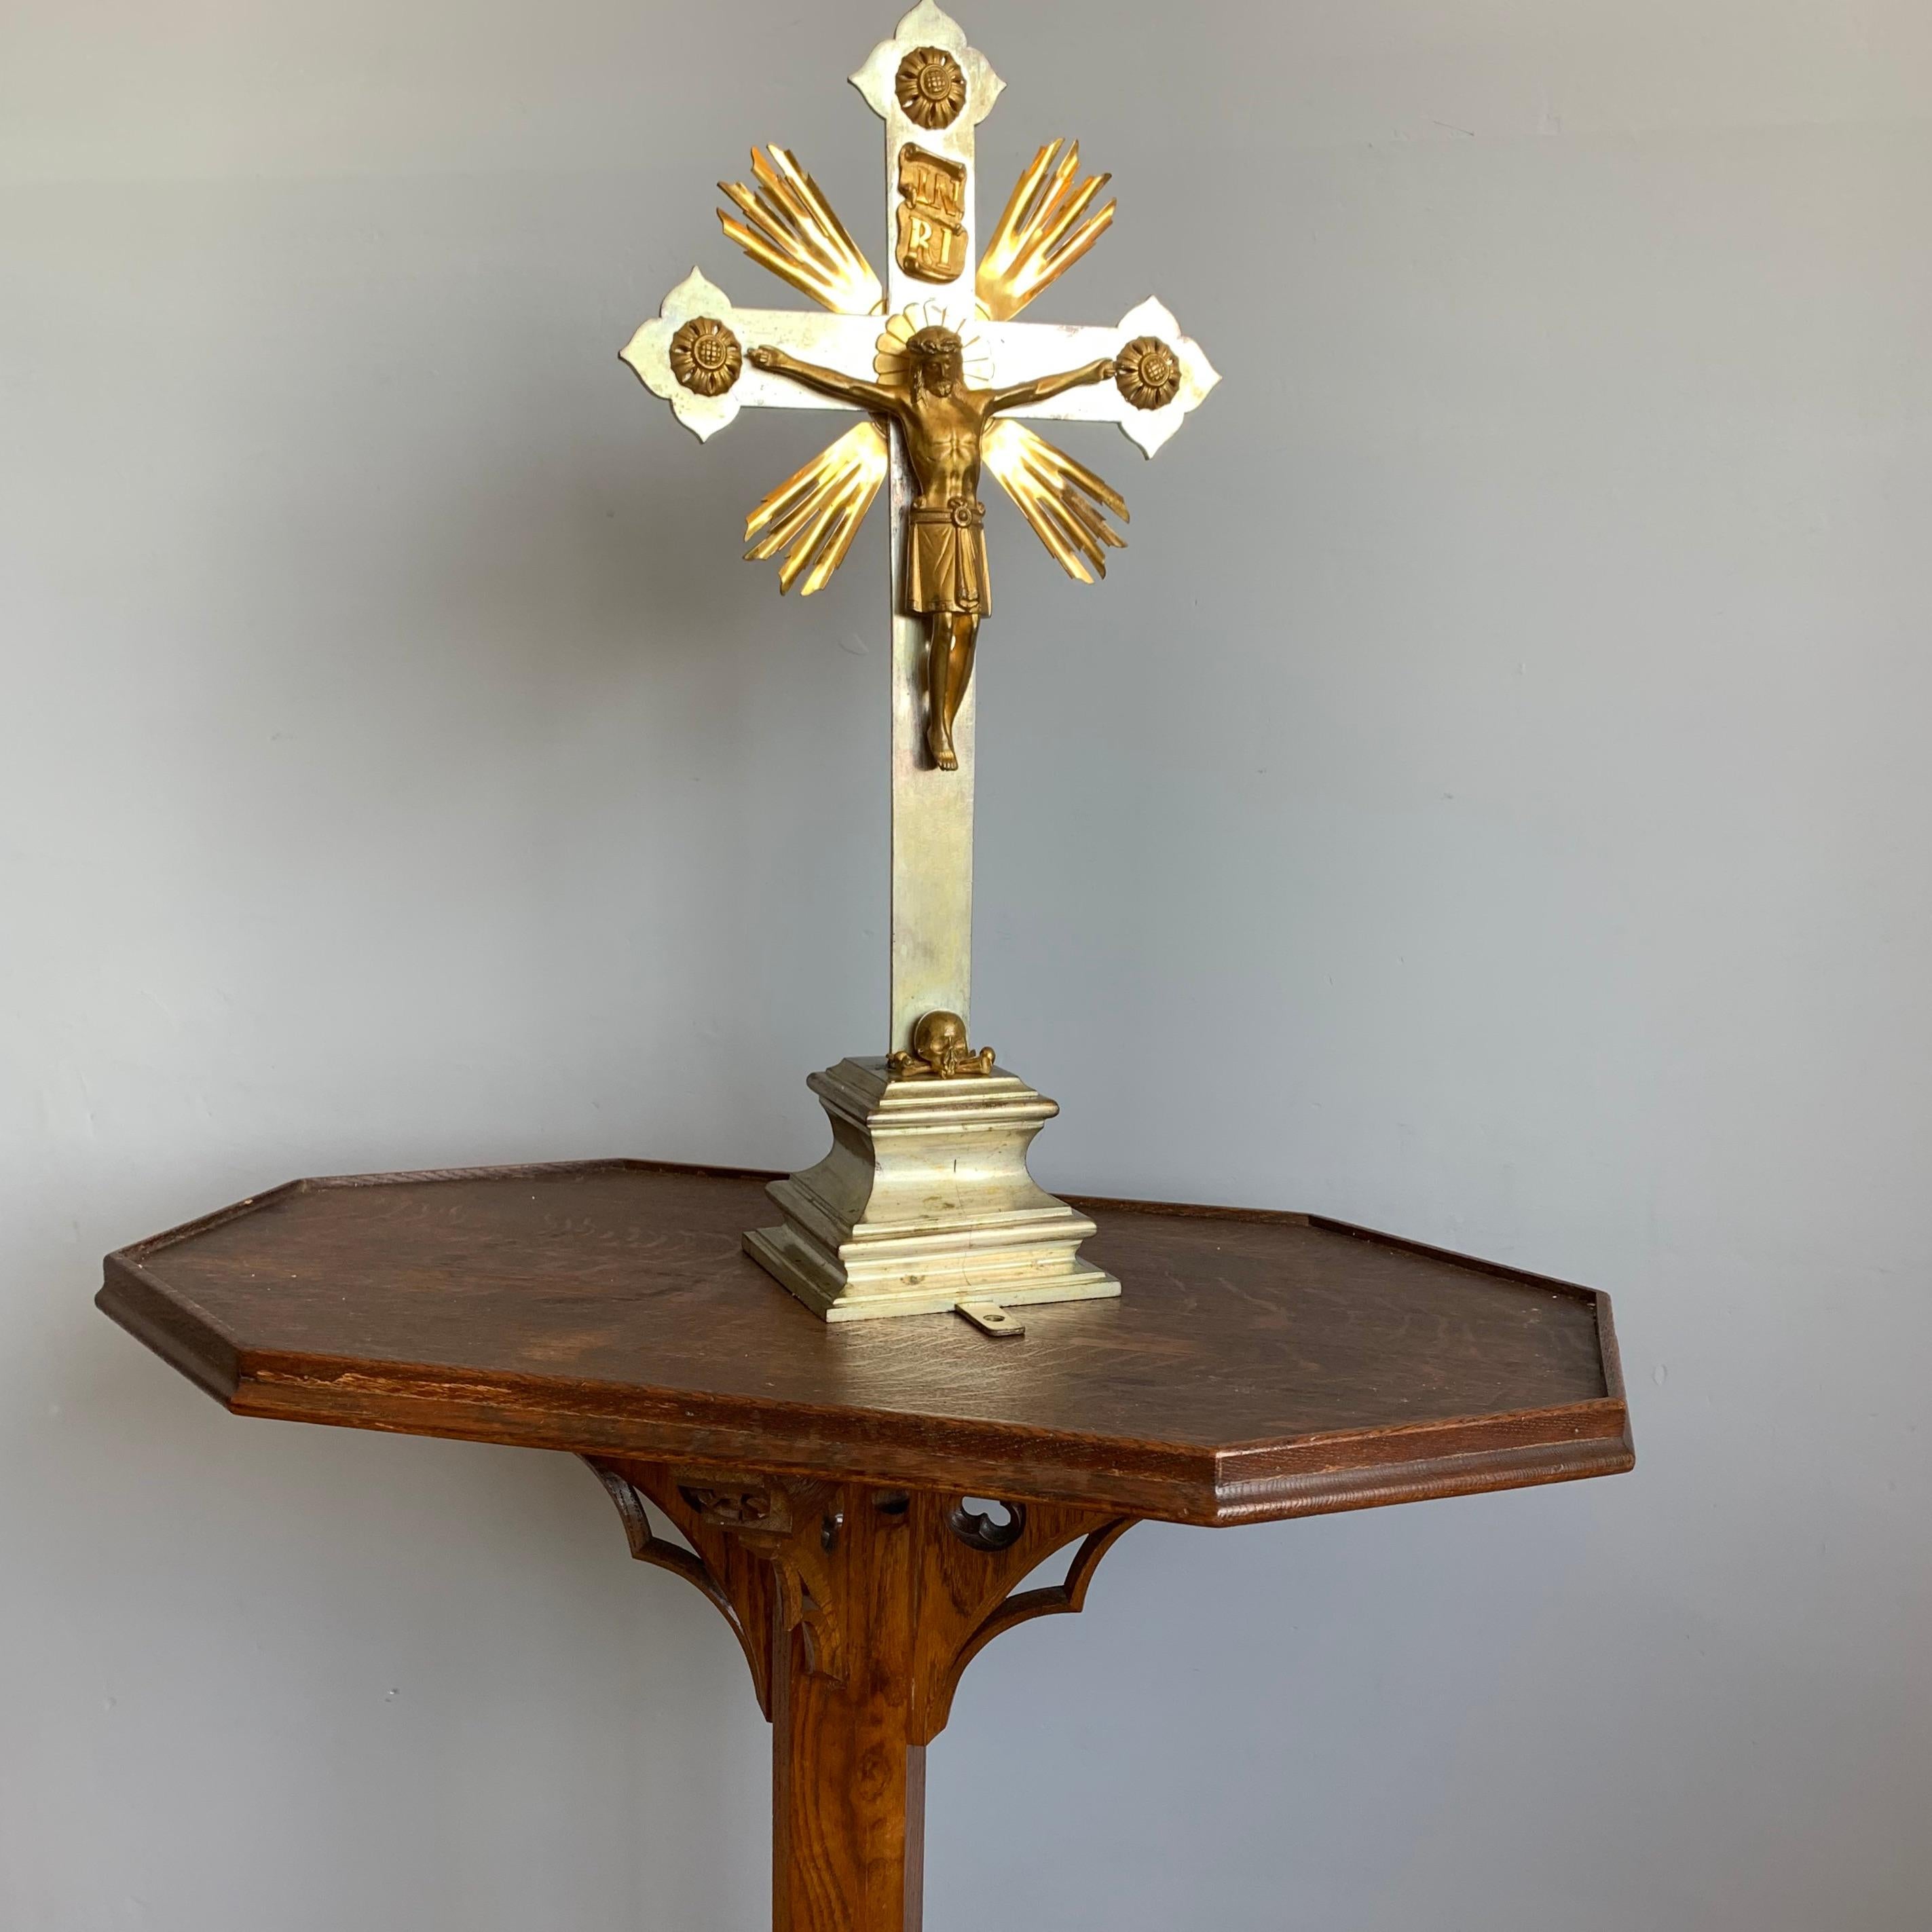 Gute Größe und beeindruckende machen, gotische Kirche Altar Kruzifix.

Dieses kunstvolle und komplett handgefertigte Bronze-Tischkruzifix wird mit einem hochwertig gefertigten und fein detaillierten, vergoldeten Bronzekorpus von Christus